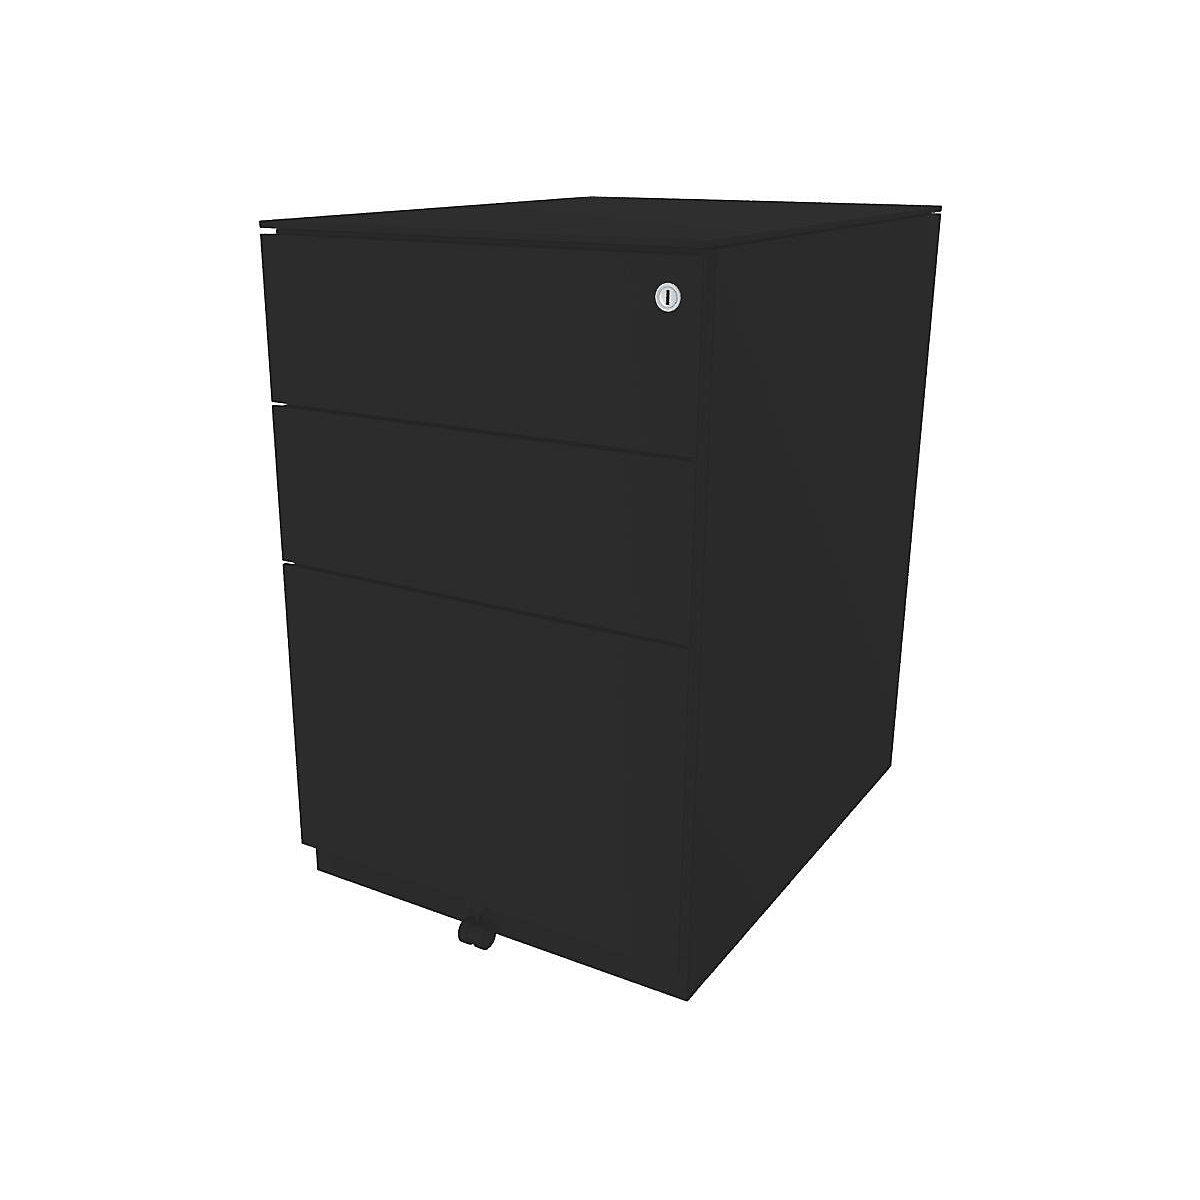 Pojazdný kontajner Note™, s 2 univerzálnymi zásuvkami, 1 závesná registratúra – BISLEY, v x š x h 652 x 420 x 565 mm, s hornou doskou, čierna-1